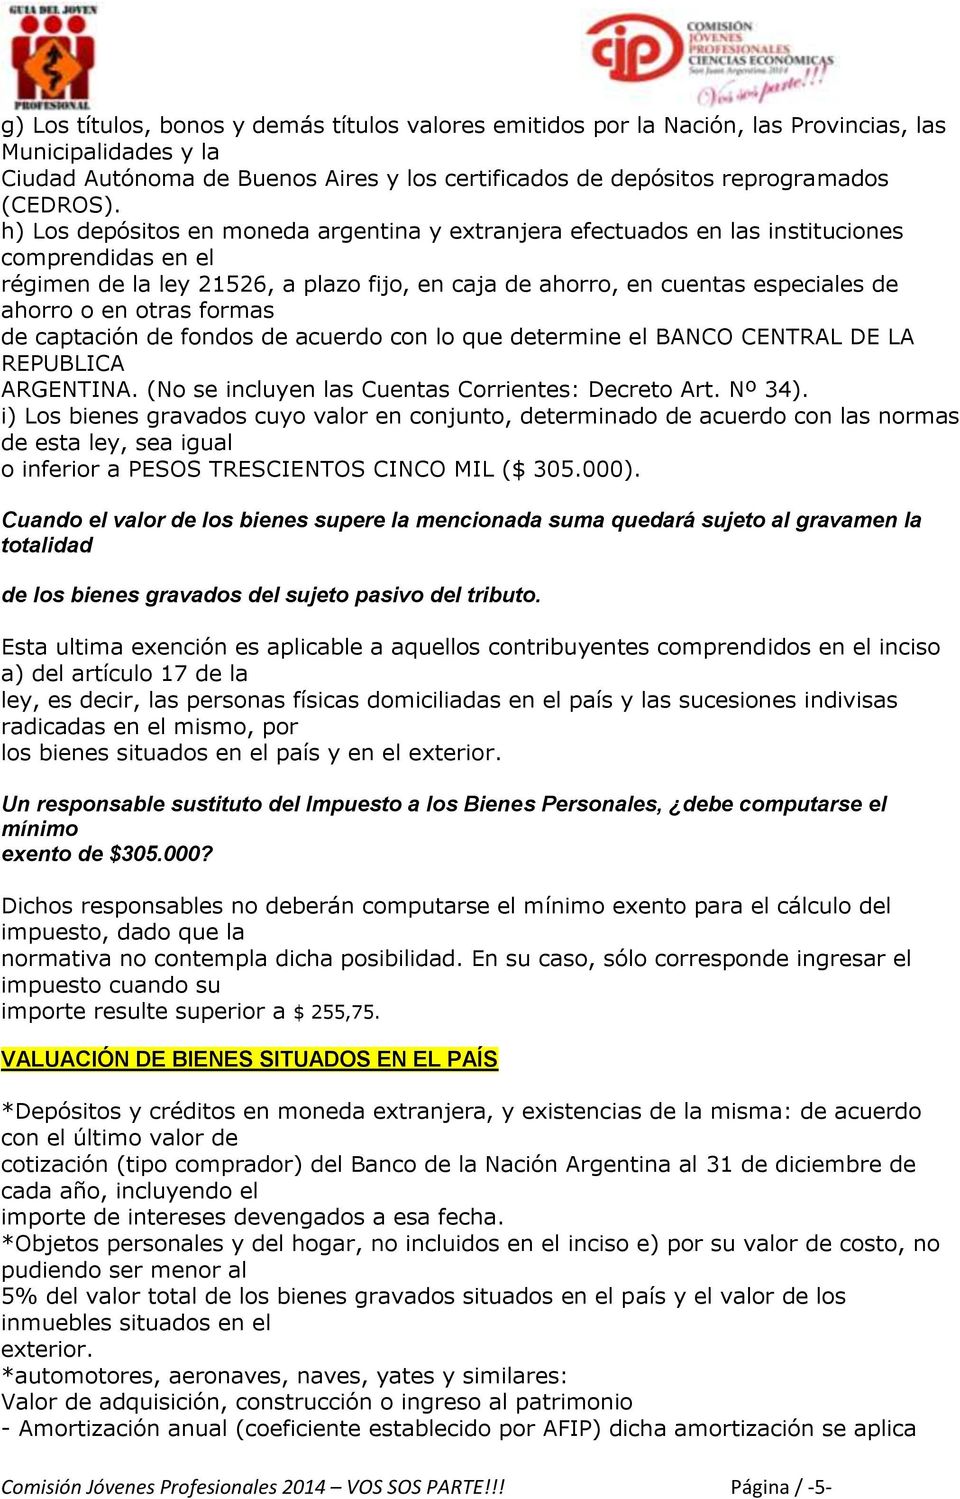 otras formas de captación de fondos de acuerdo con lo que determine el BANCO CENTRAL DE LA REPUBLICA ARGENTINA. (No se incluyen las Cuentas Corrientes: Decreto Art. Nº 34).